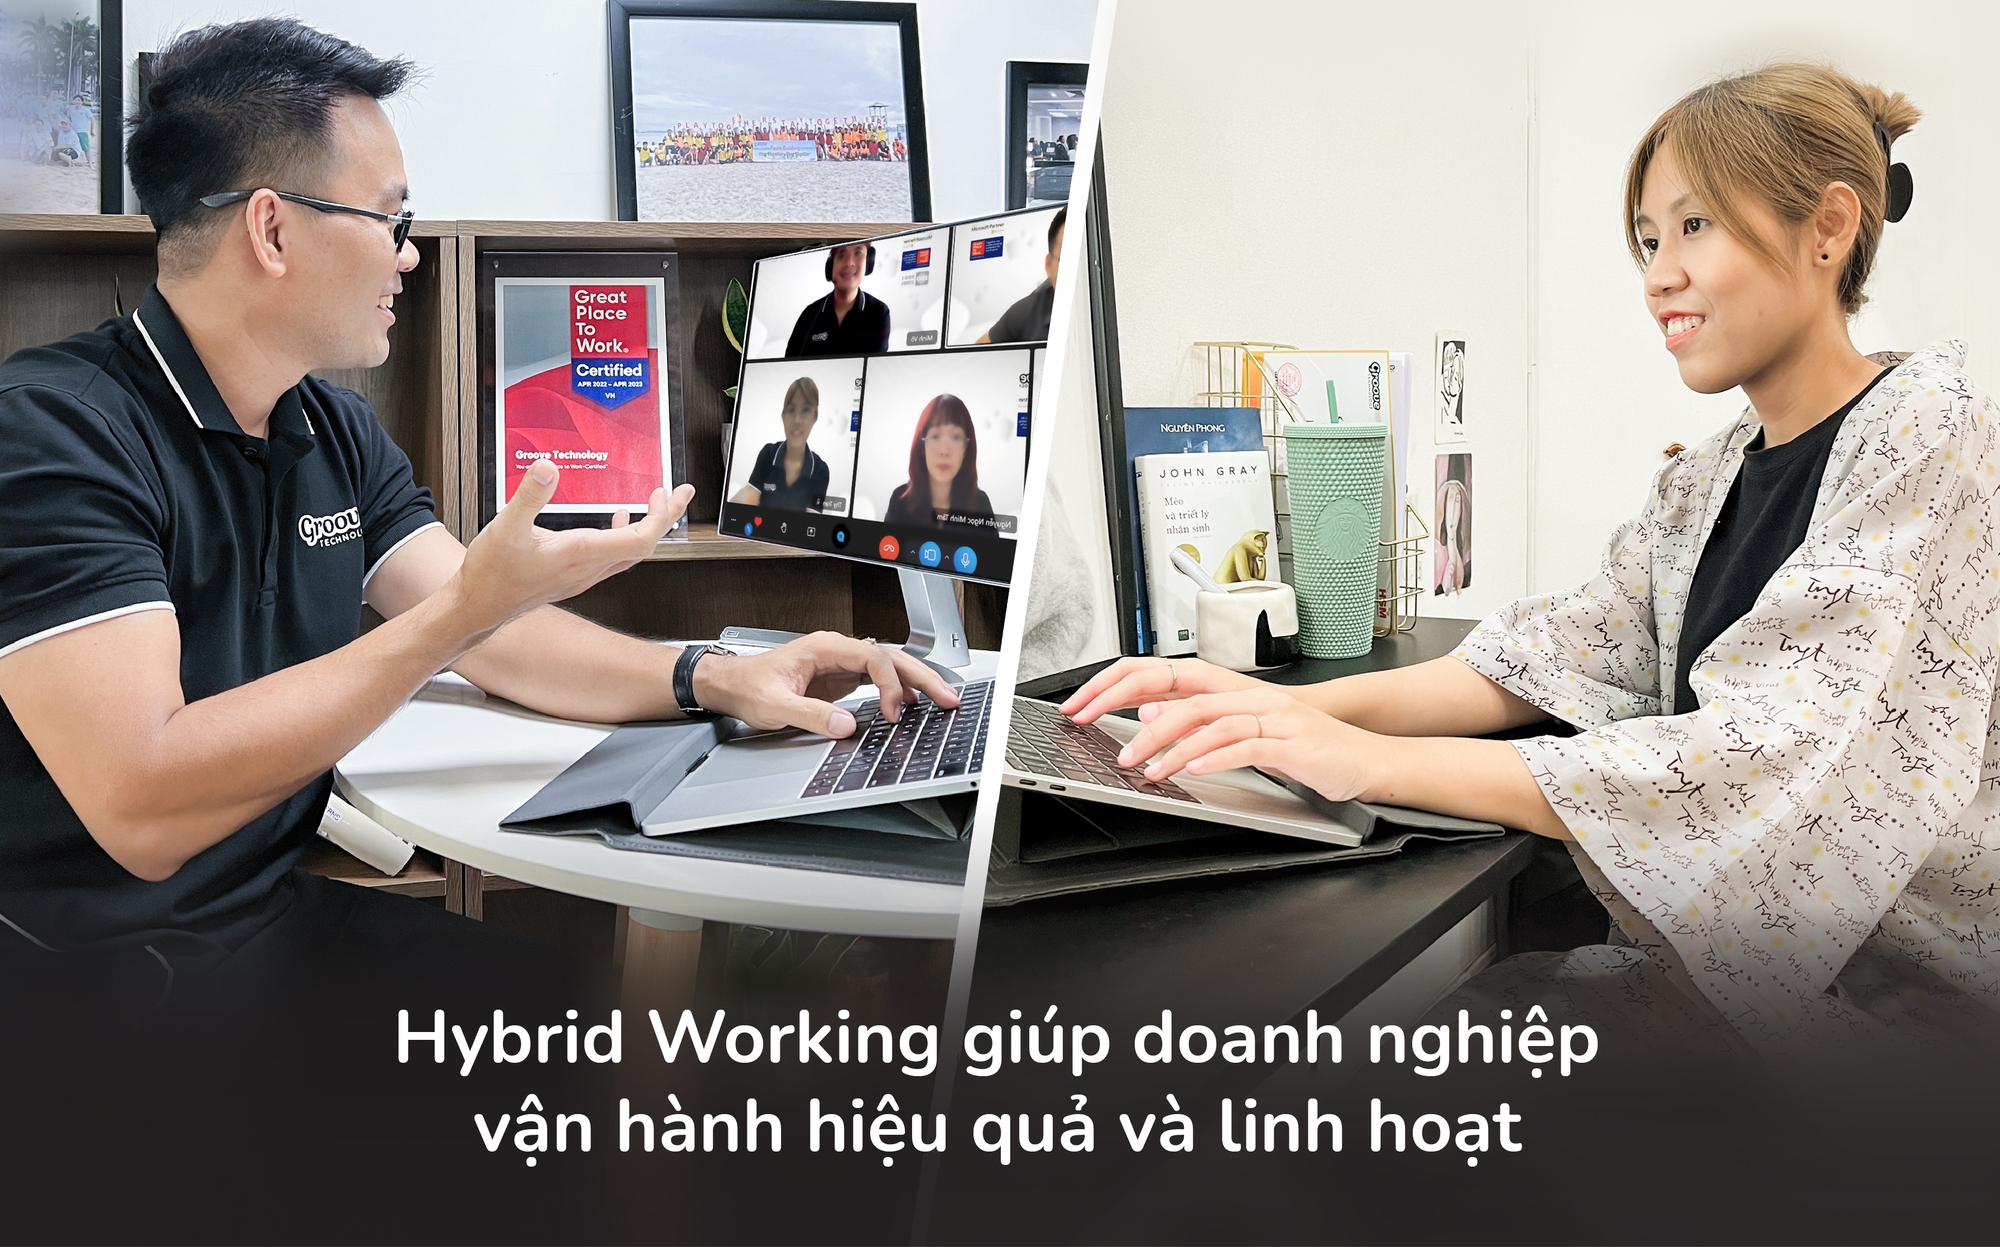 Hybrid working - đón đầu mô hình làm việc của tương lai